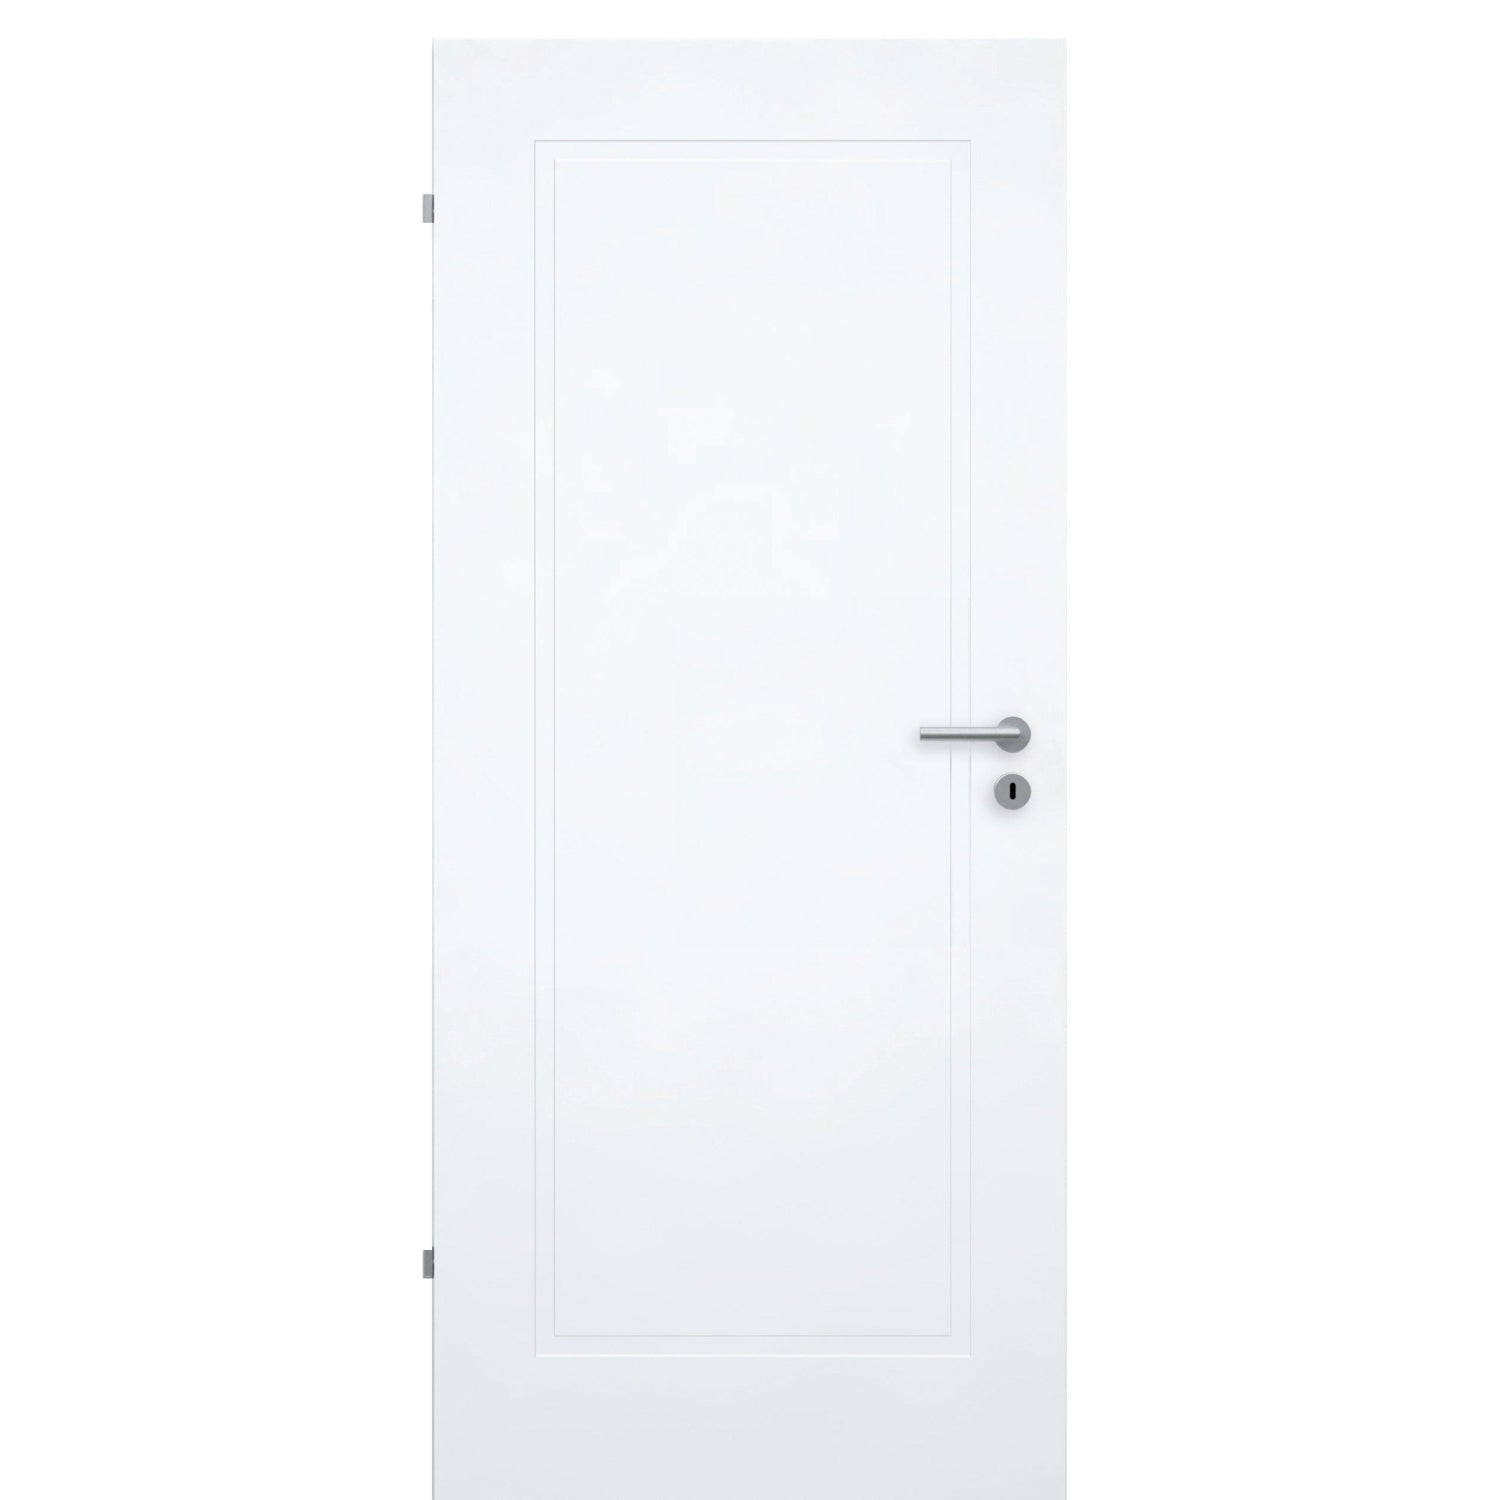 Zimmertür brillant-weiß Stiltür mit 1 Kassette Designkante - Modell Stiltür M13